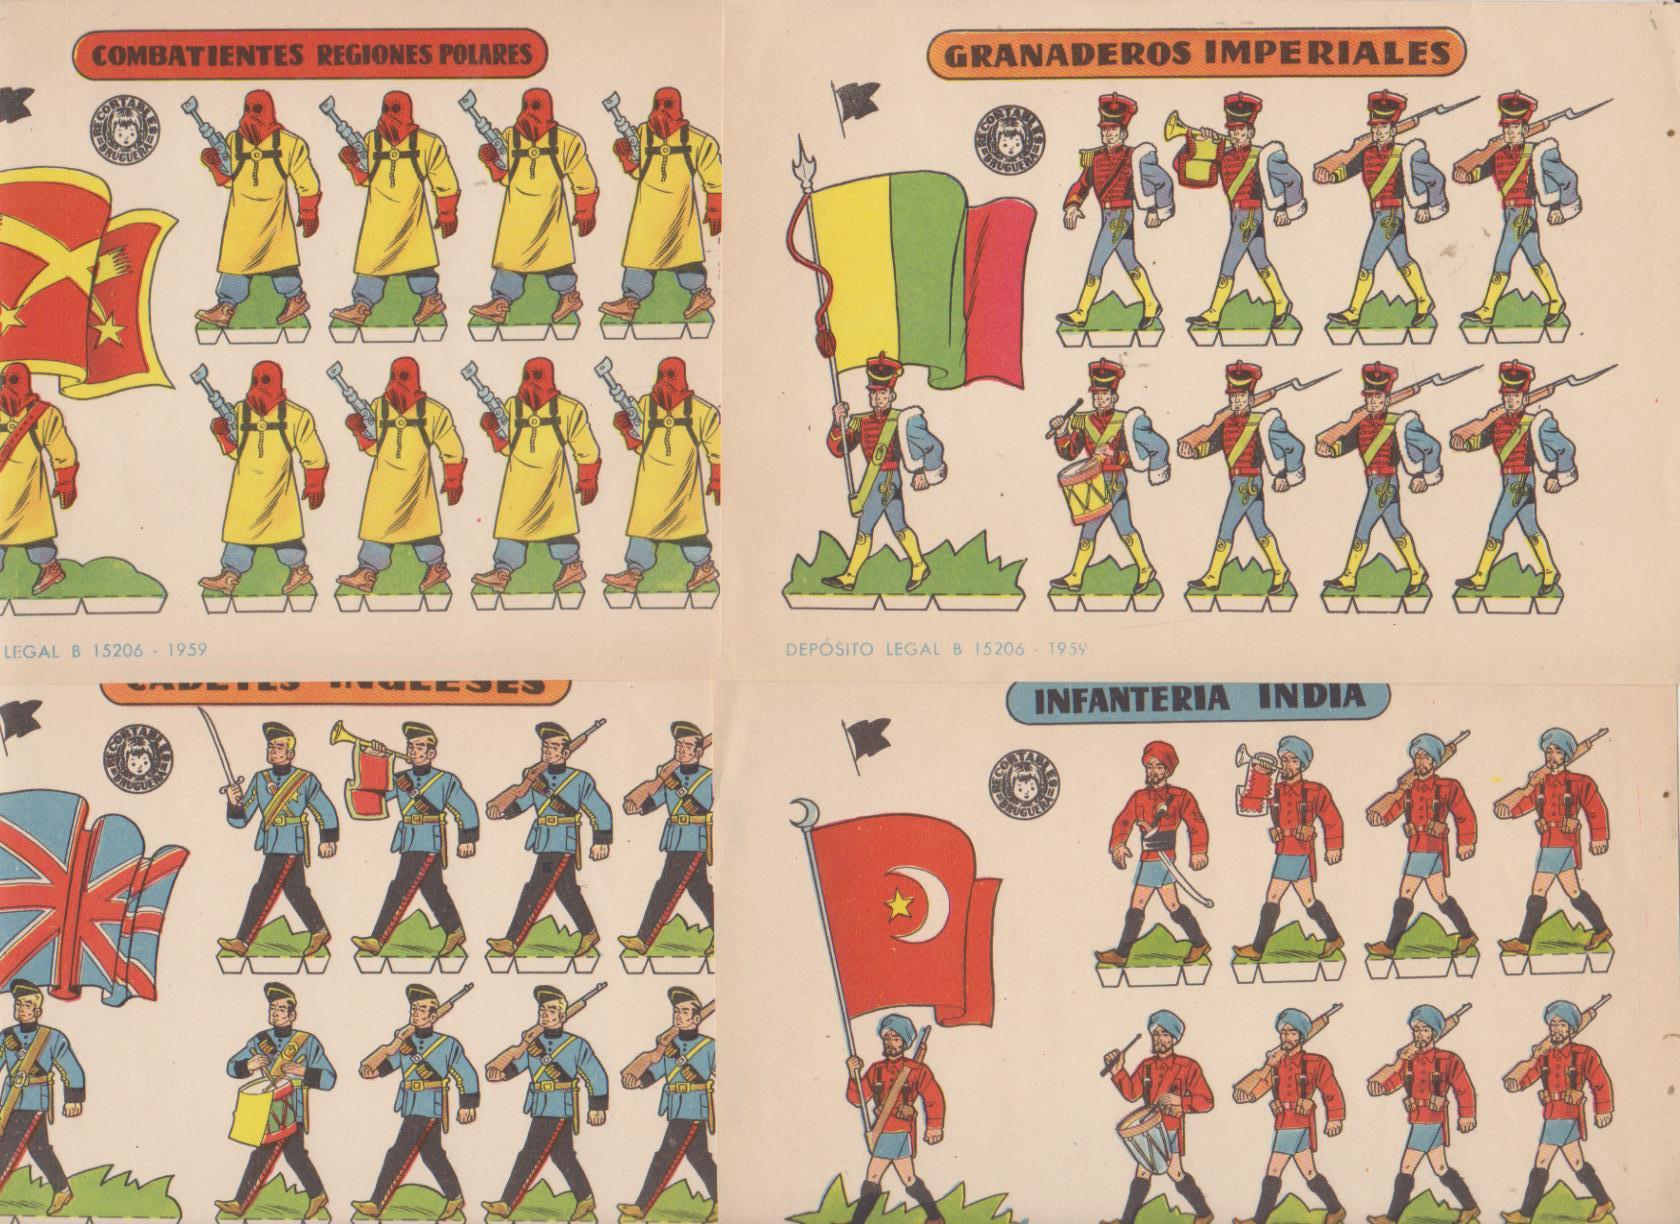 Recortables Bruguera (12x17) Cadetes Ingleses, Combatientes Regiones polares, Granaderos Imperiales. Infantería India. Año 1959